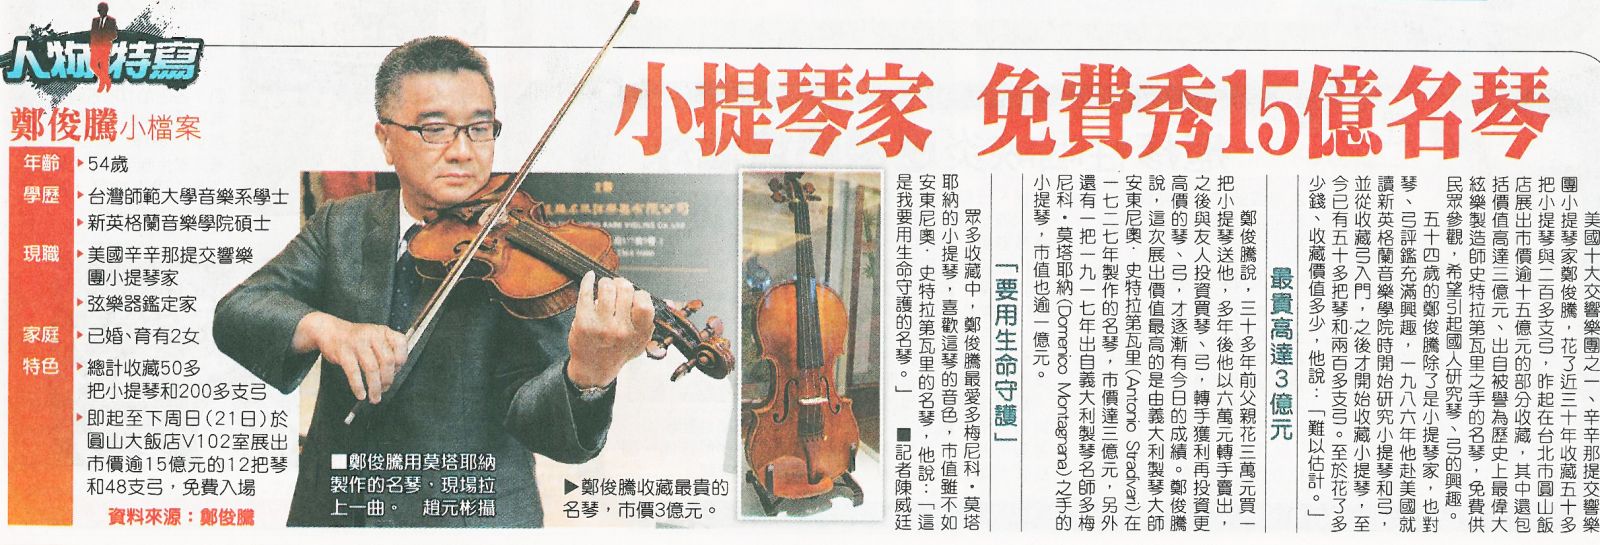 蘋果日報 小提琴家 鄭俊騰 展出15億名琴名弓 孟橙策略行銷